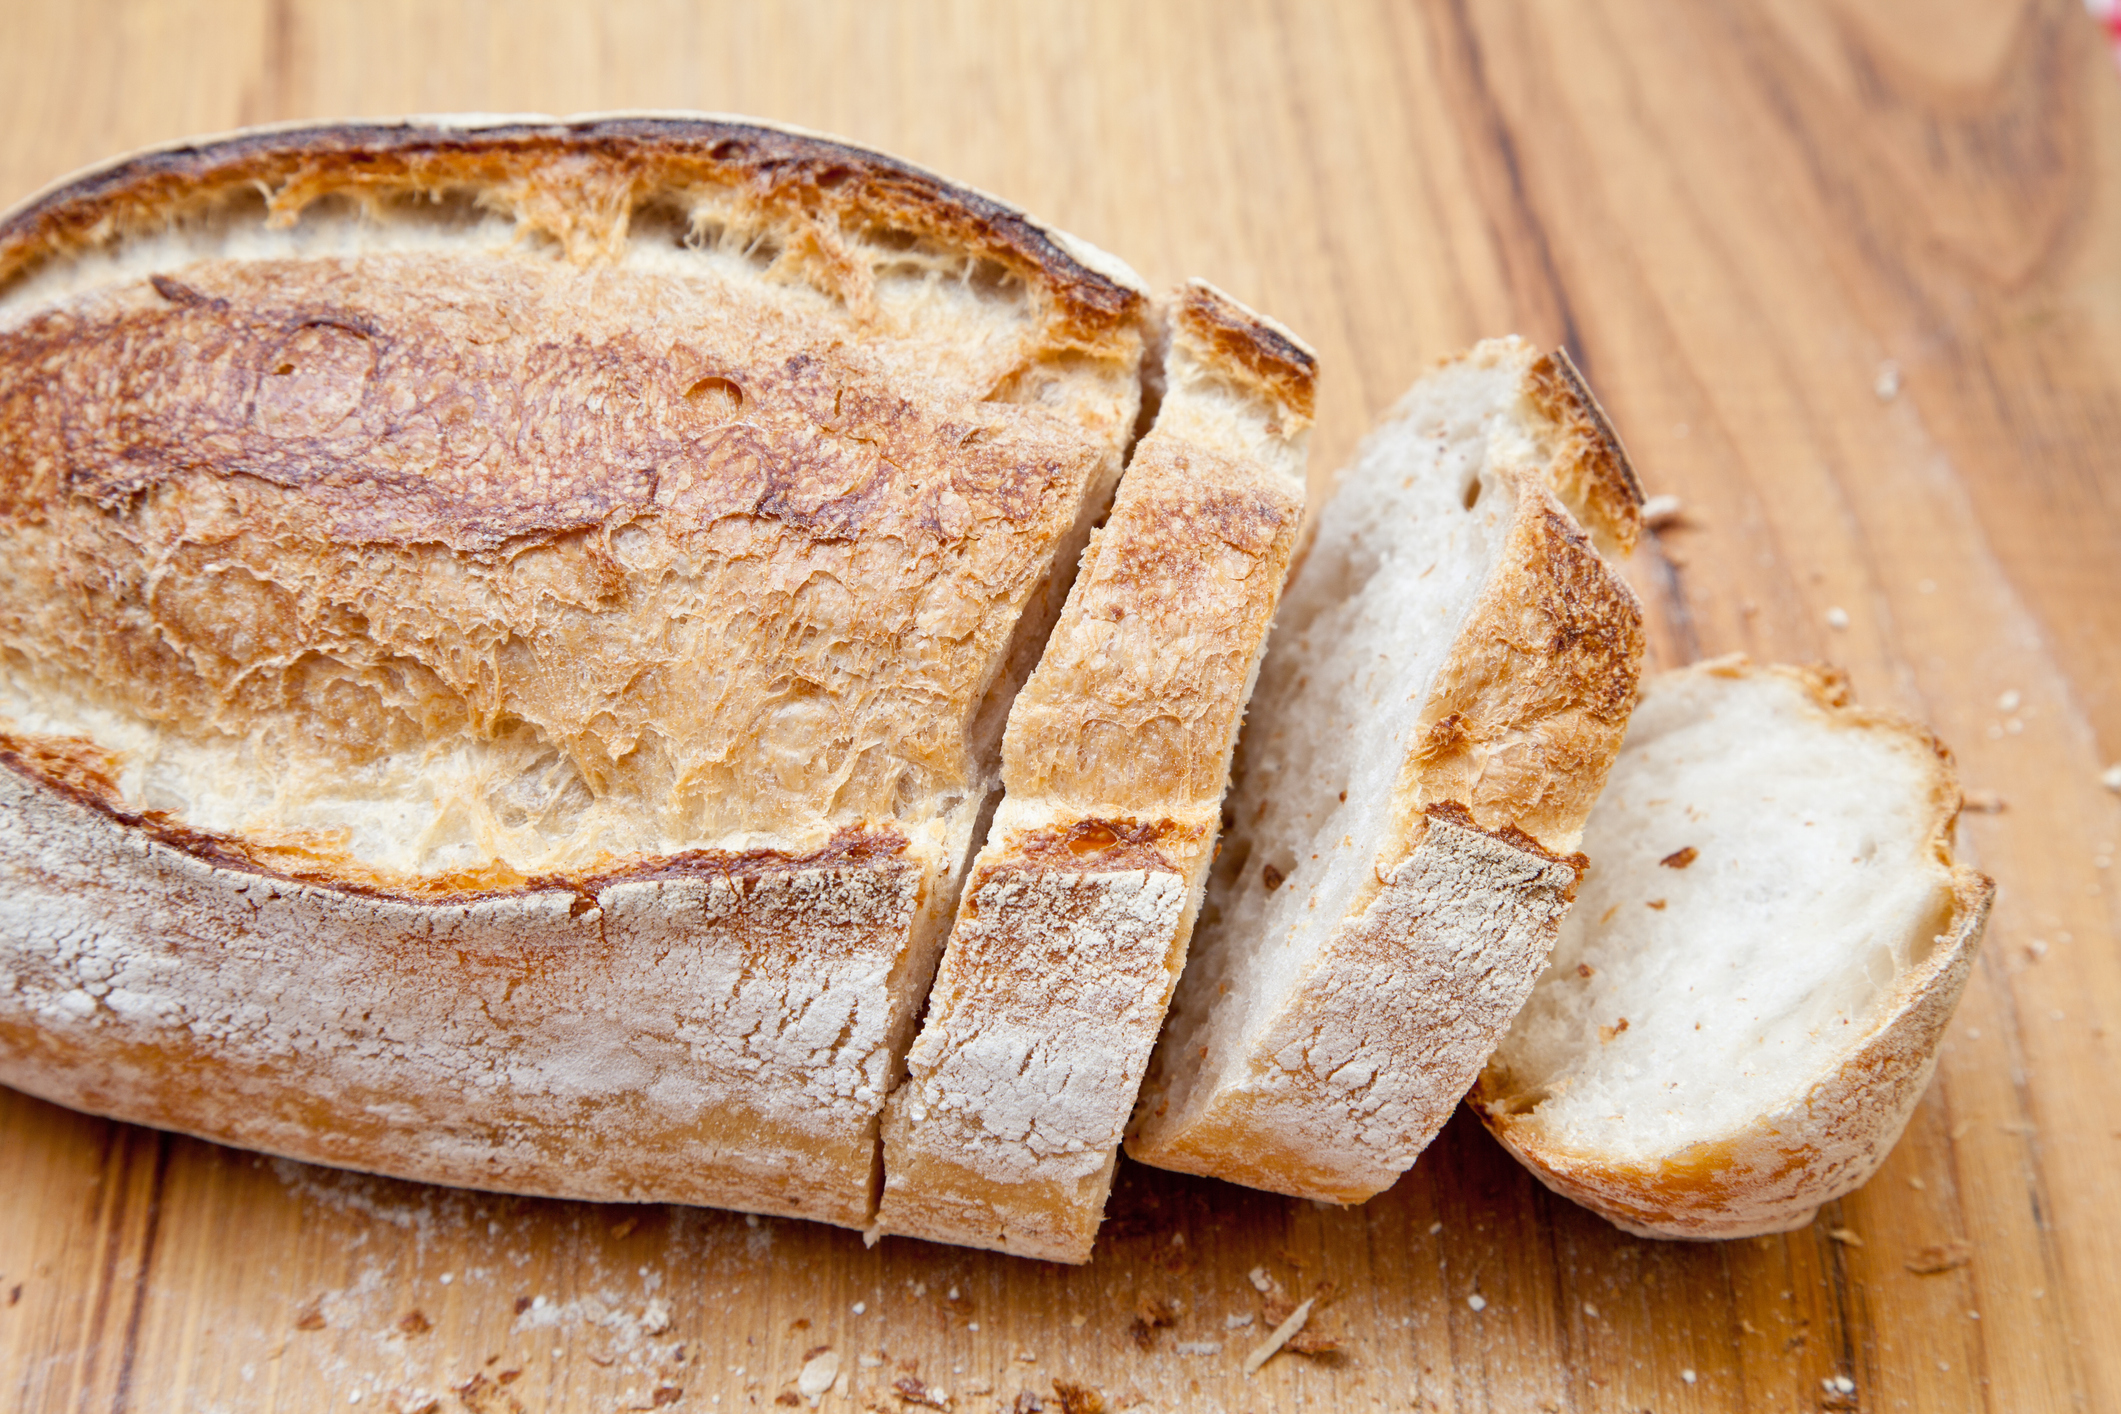 Mennyi kalória van 100 gramm (körülbelül 4 szelet) fehér kenyérben?